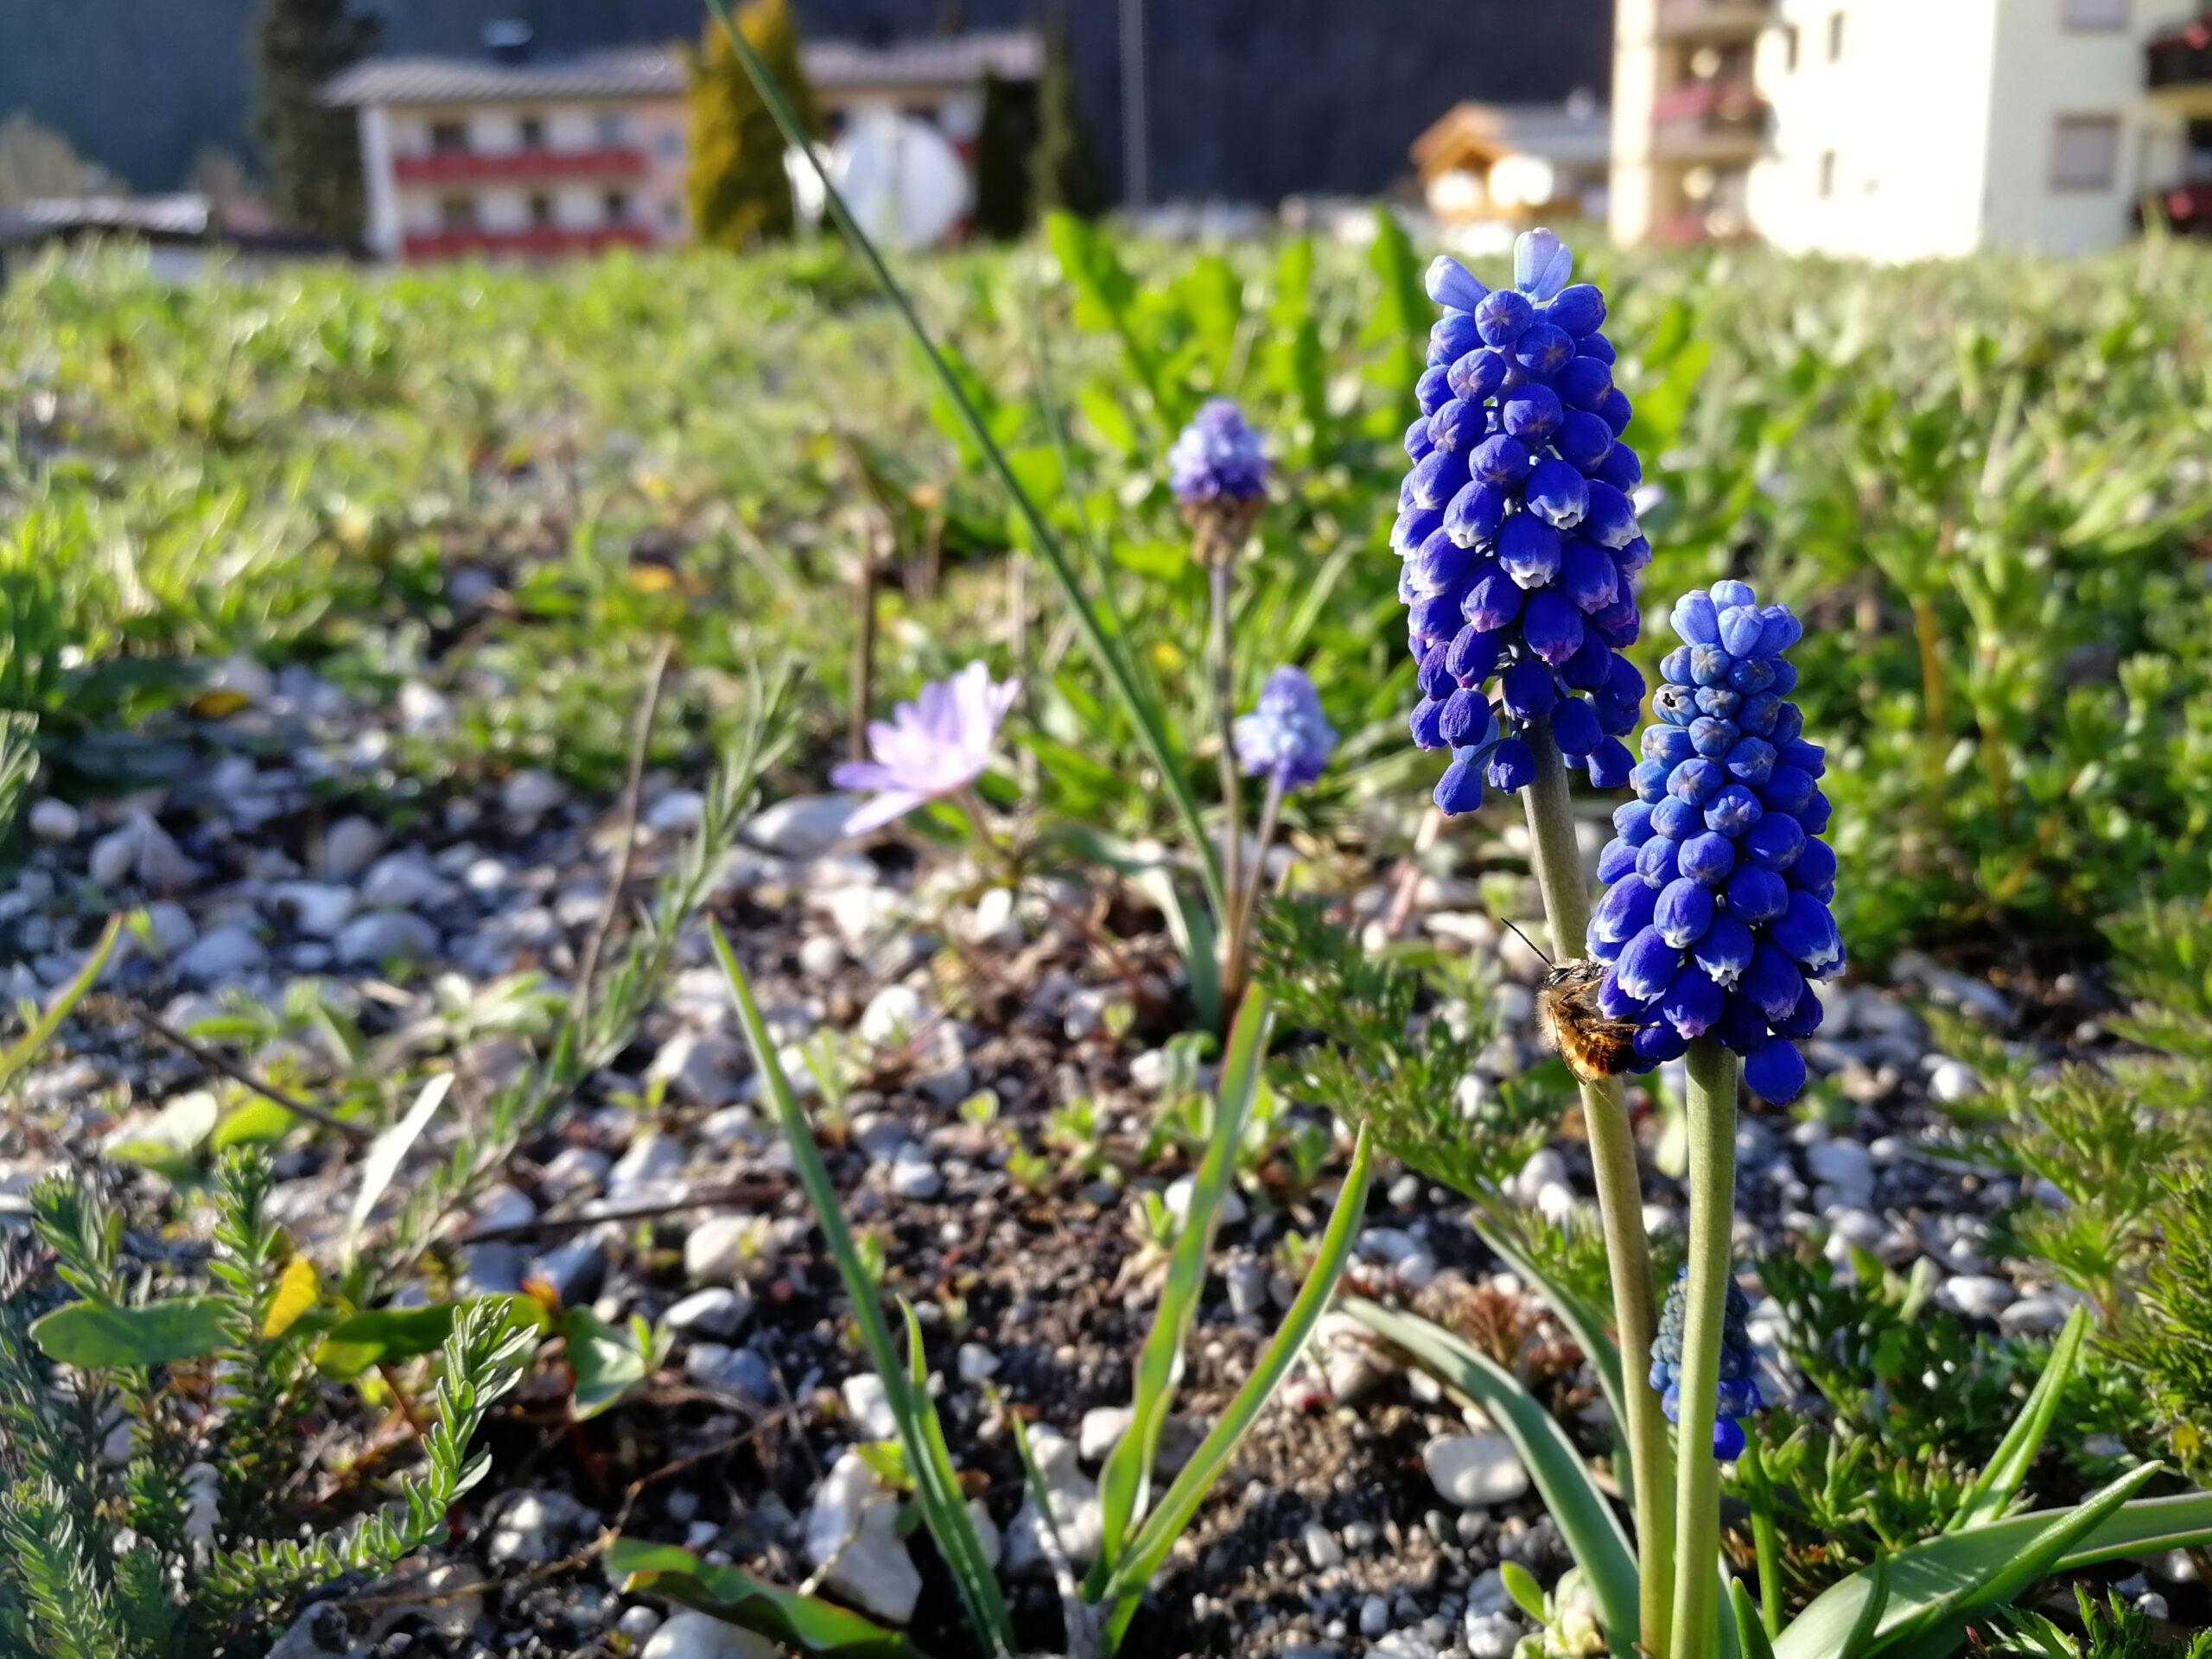 Blumenzwiebeln im Naturgarten – Jetzt an den Frühling denken, 13.10.2022